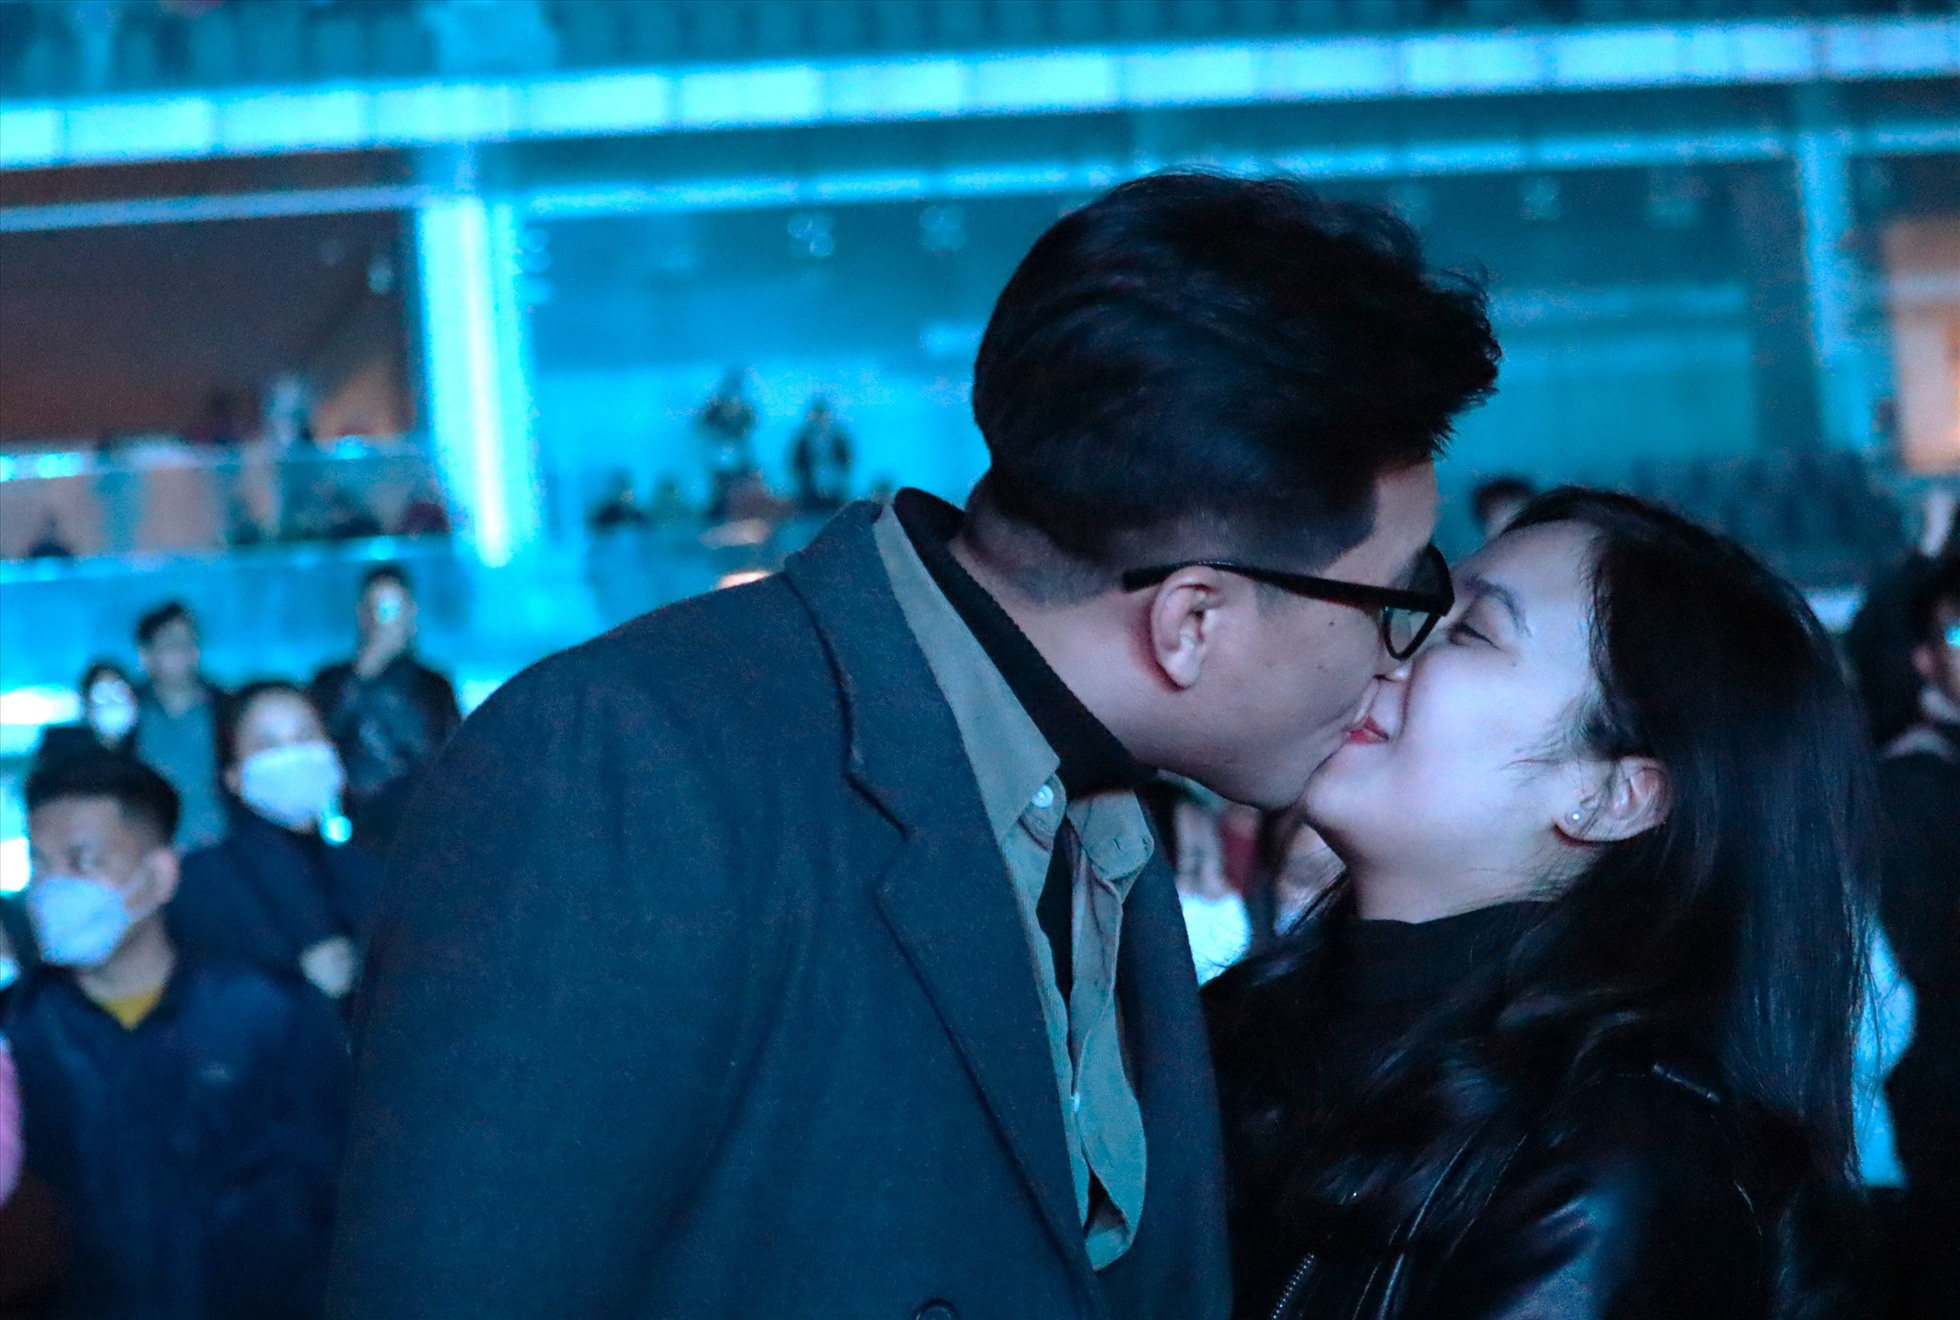 Cặp đôi Nguyễn Thể Quý và Nguyễn Thị Bạch Linh đã có màn khóa môi ngọt ngào trong những khoảnh khắc đầu tiên của năm mới.